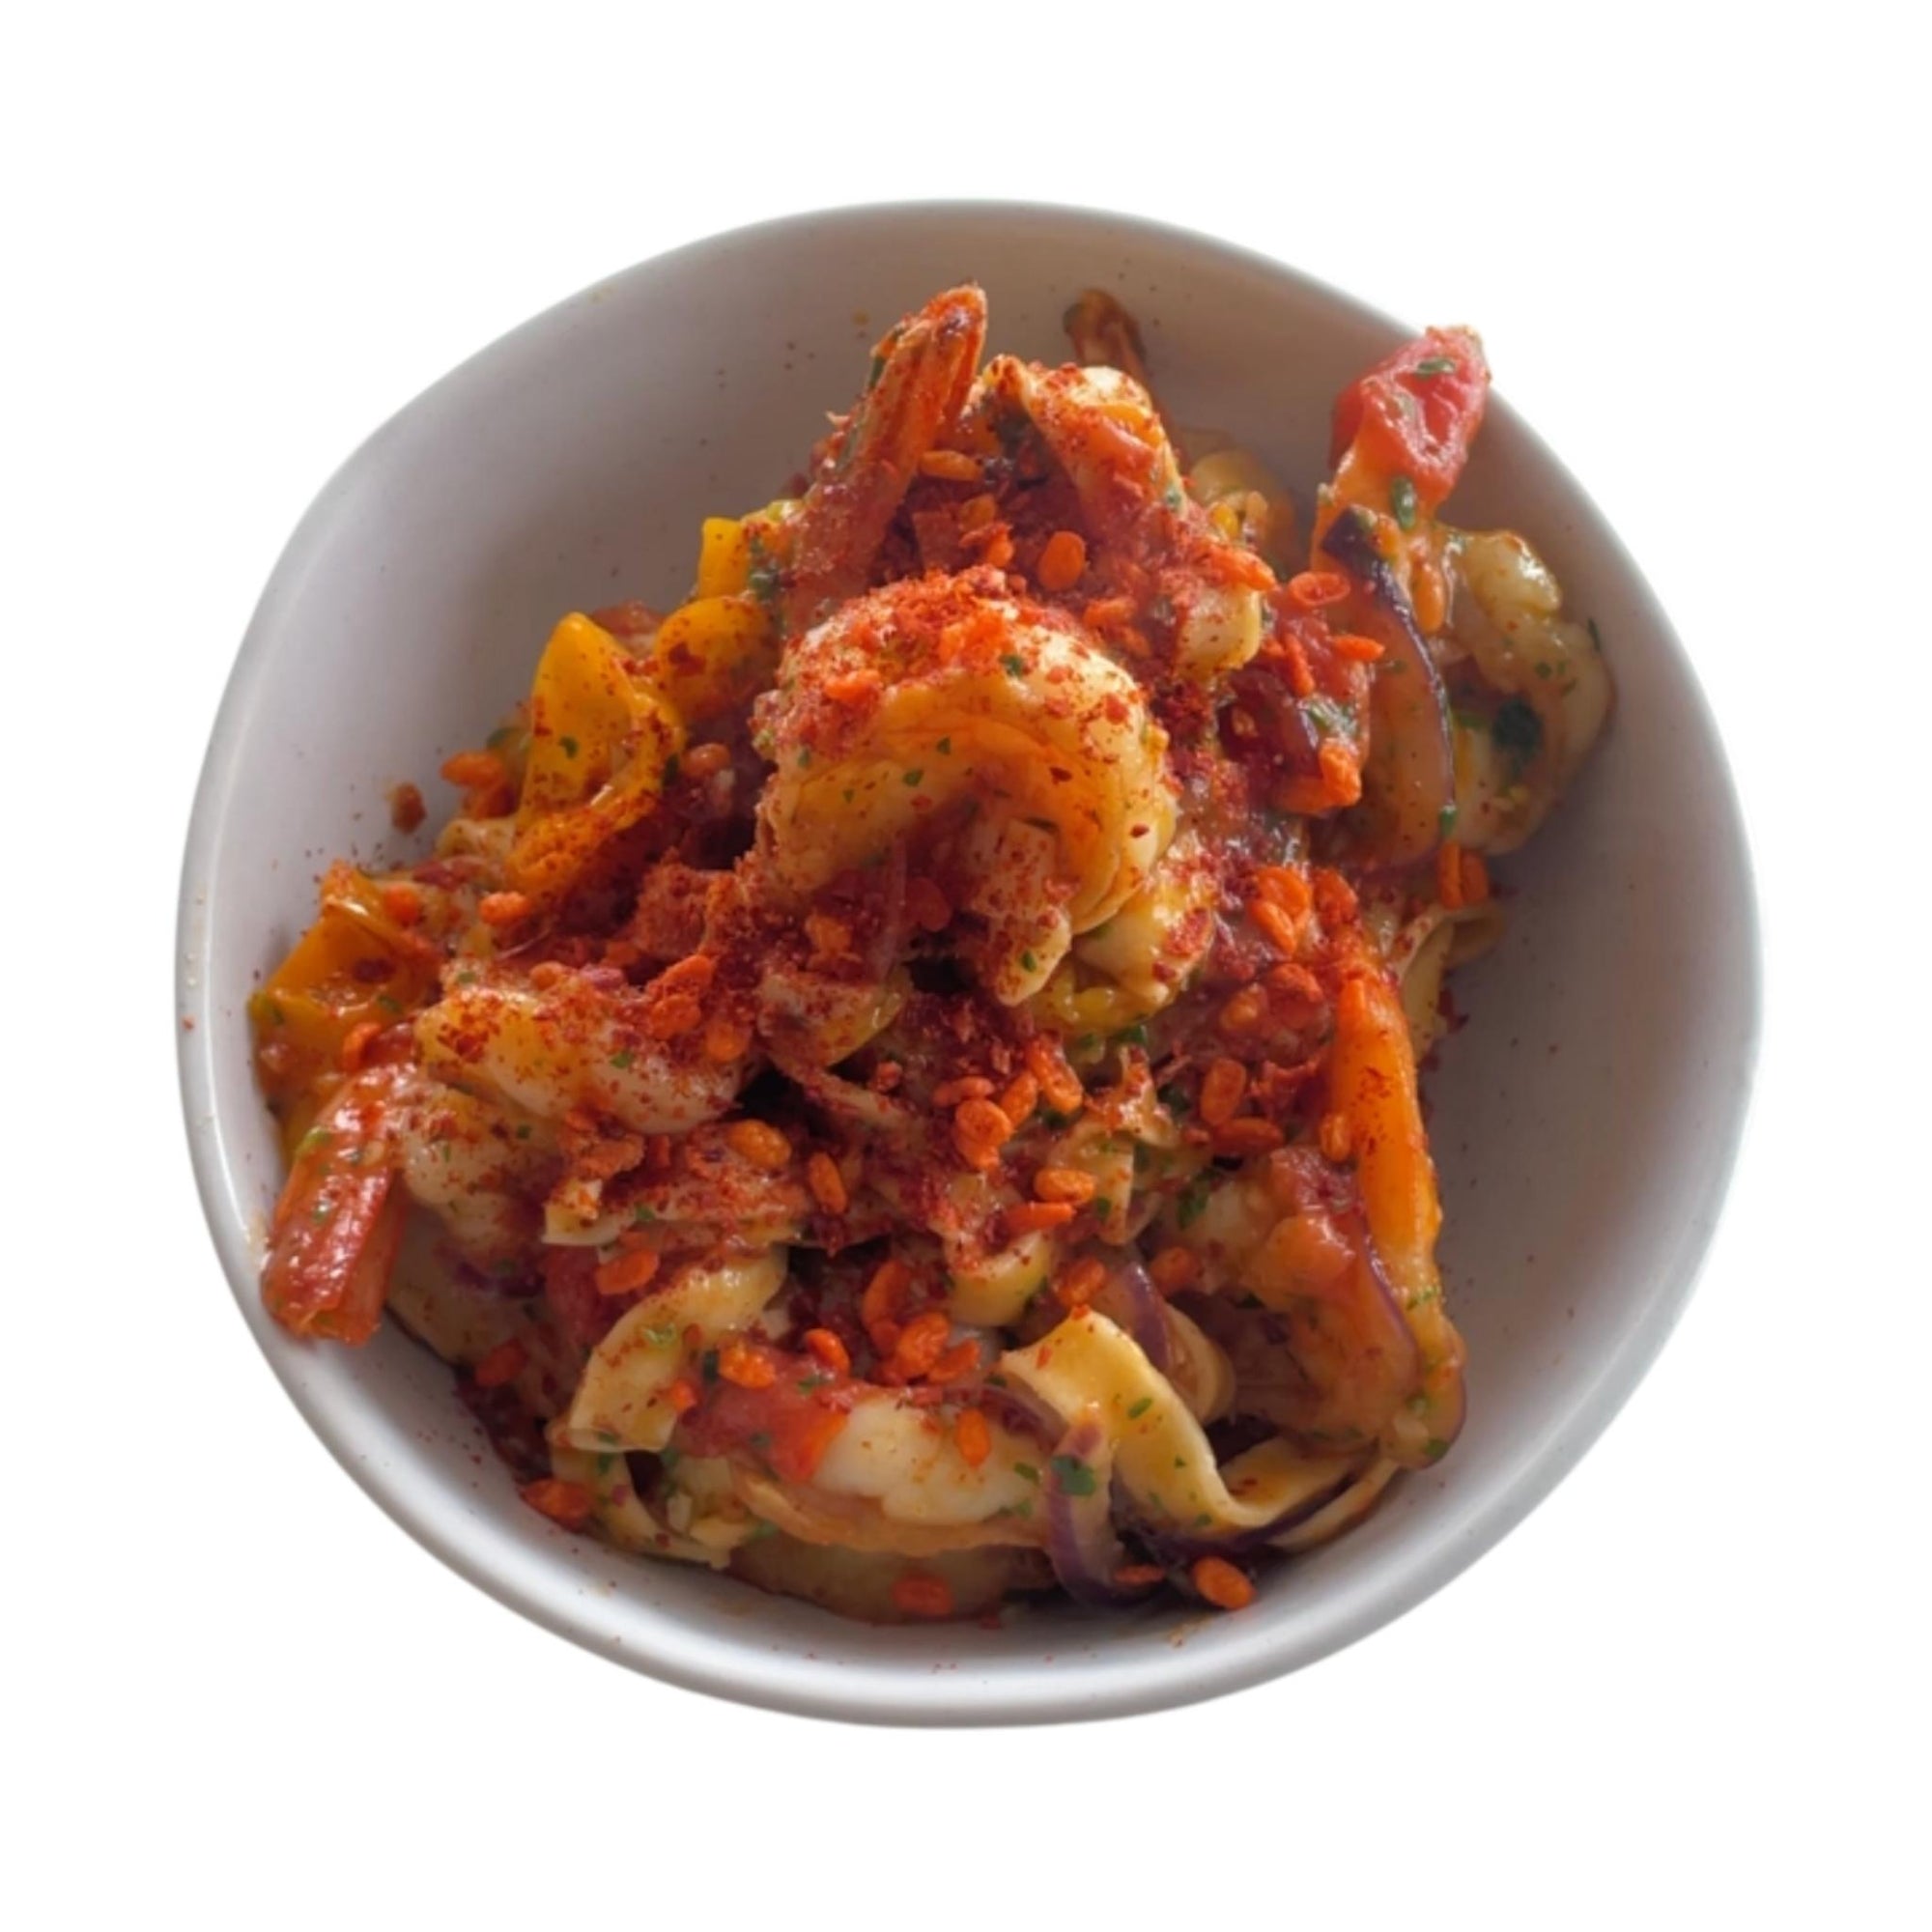 Chilli garlic prawn pasta with Chilli Tomato